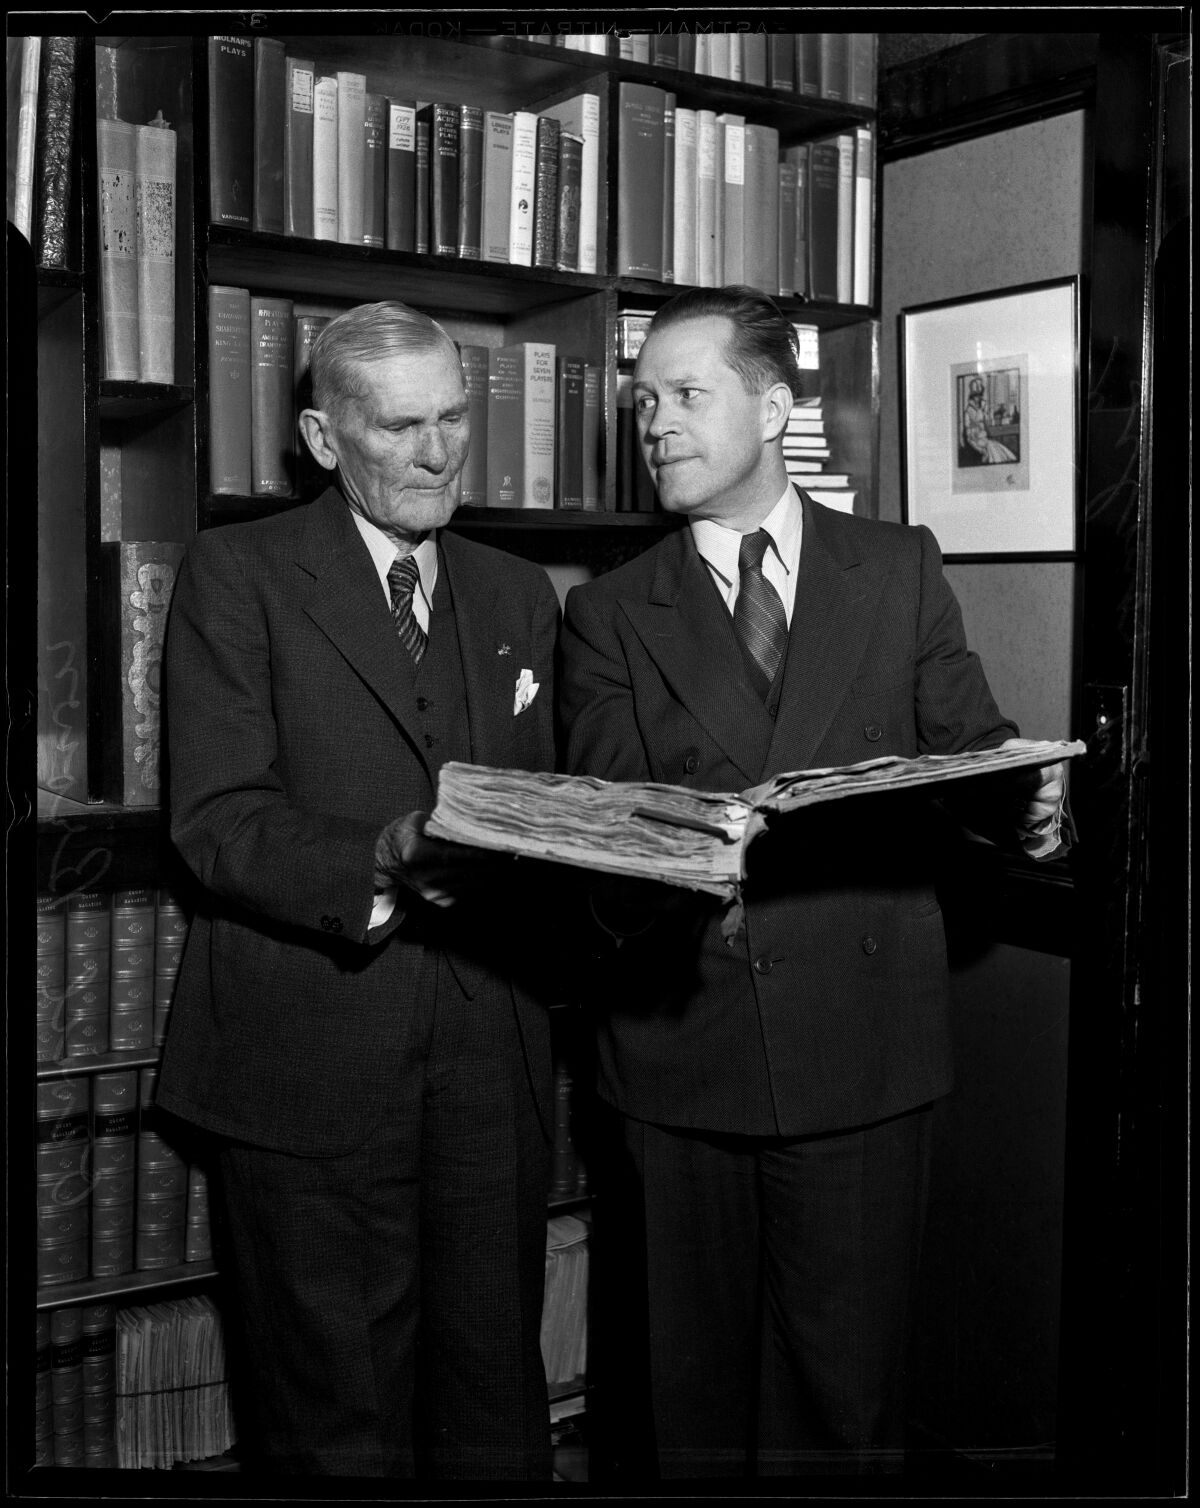 एक श्वेत-श्याम तस्वीर में, दो आदमी एक किताबों की अलमारी के सामने खड़े हैं, एक के पास एक बड़ी खुली किताब है। 